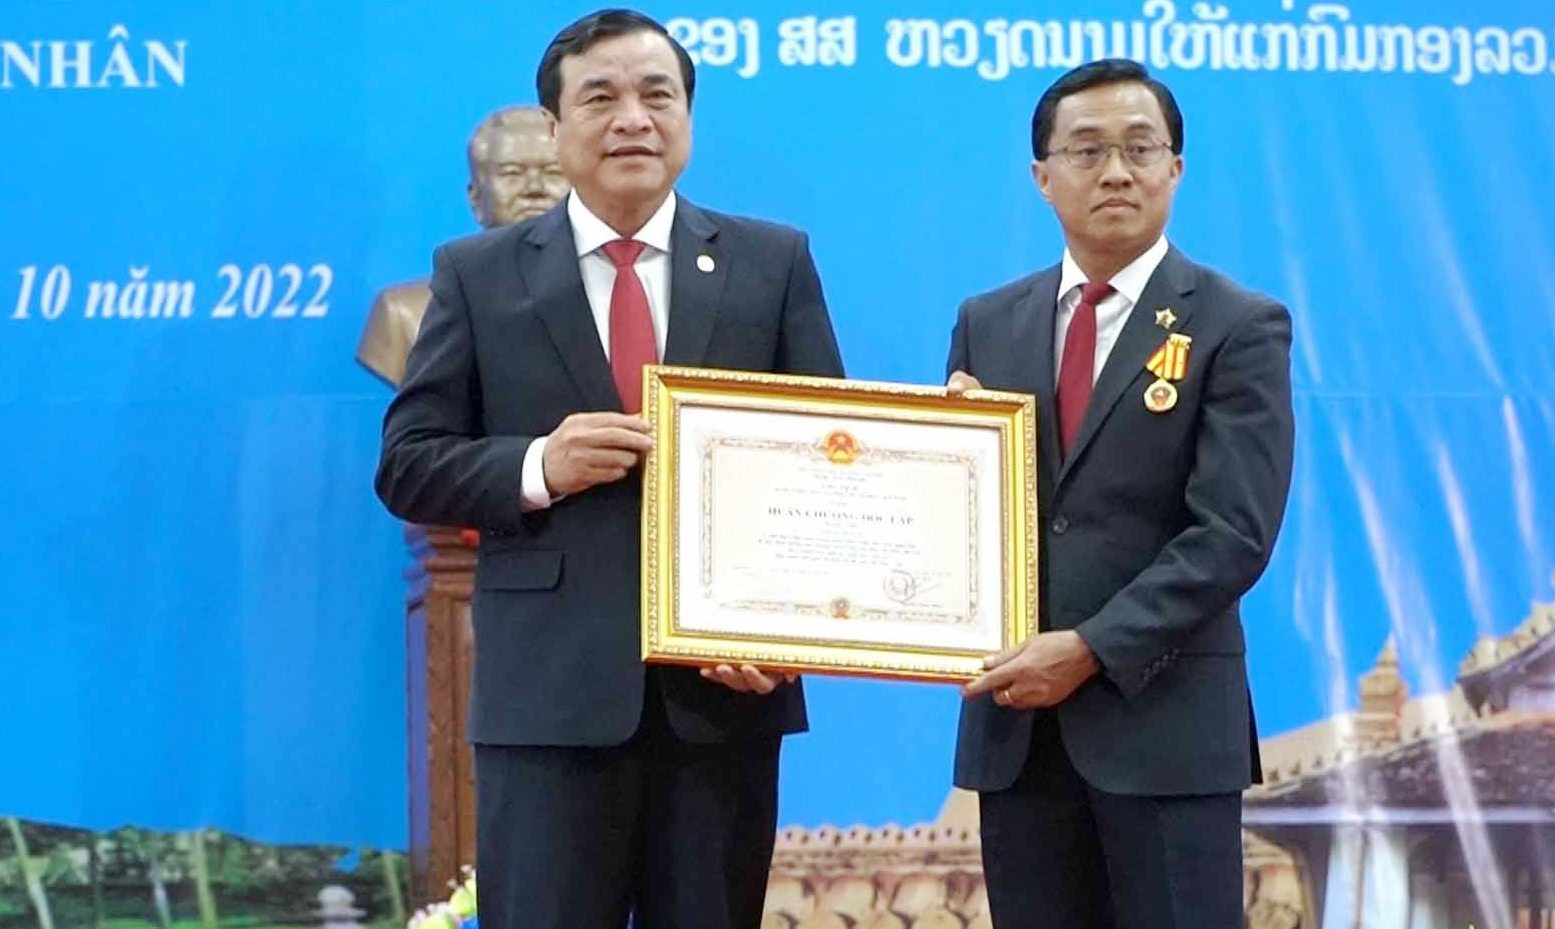 thừa ủy quyền của Chủ tịch nước, đồng chí Phan Việt Cường trao tặng Huân chương Độc lập hạng Nhì cho đồng chí Lếch-lay Sỉ-vi-lay